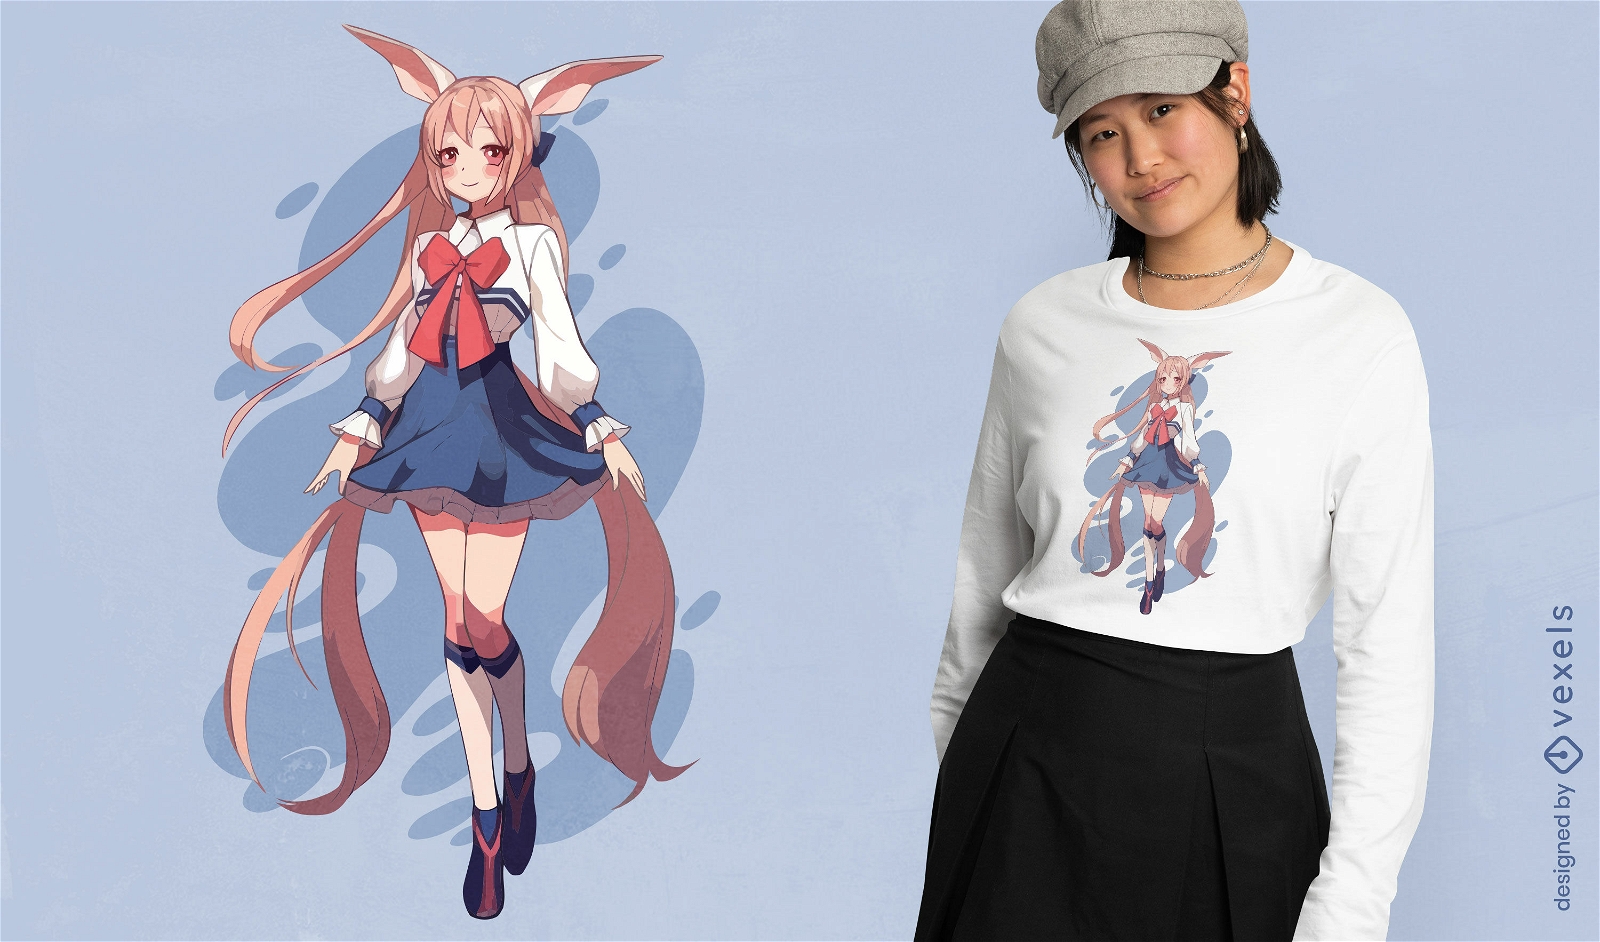 Baixar Vetor De Garota De Anime Com Design De Camiseta De Gato